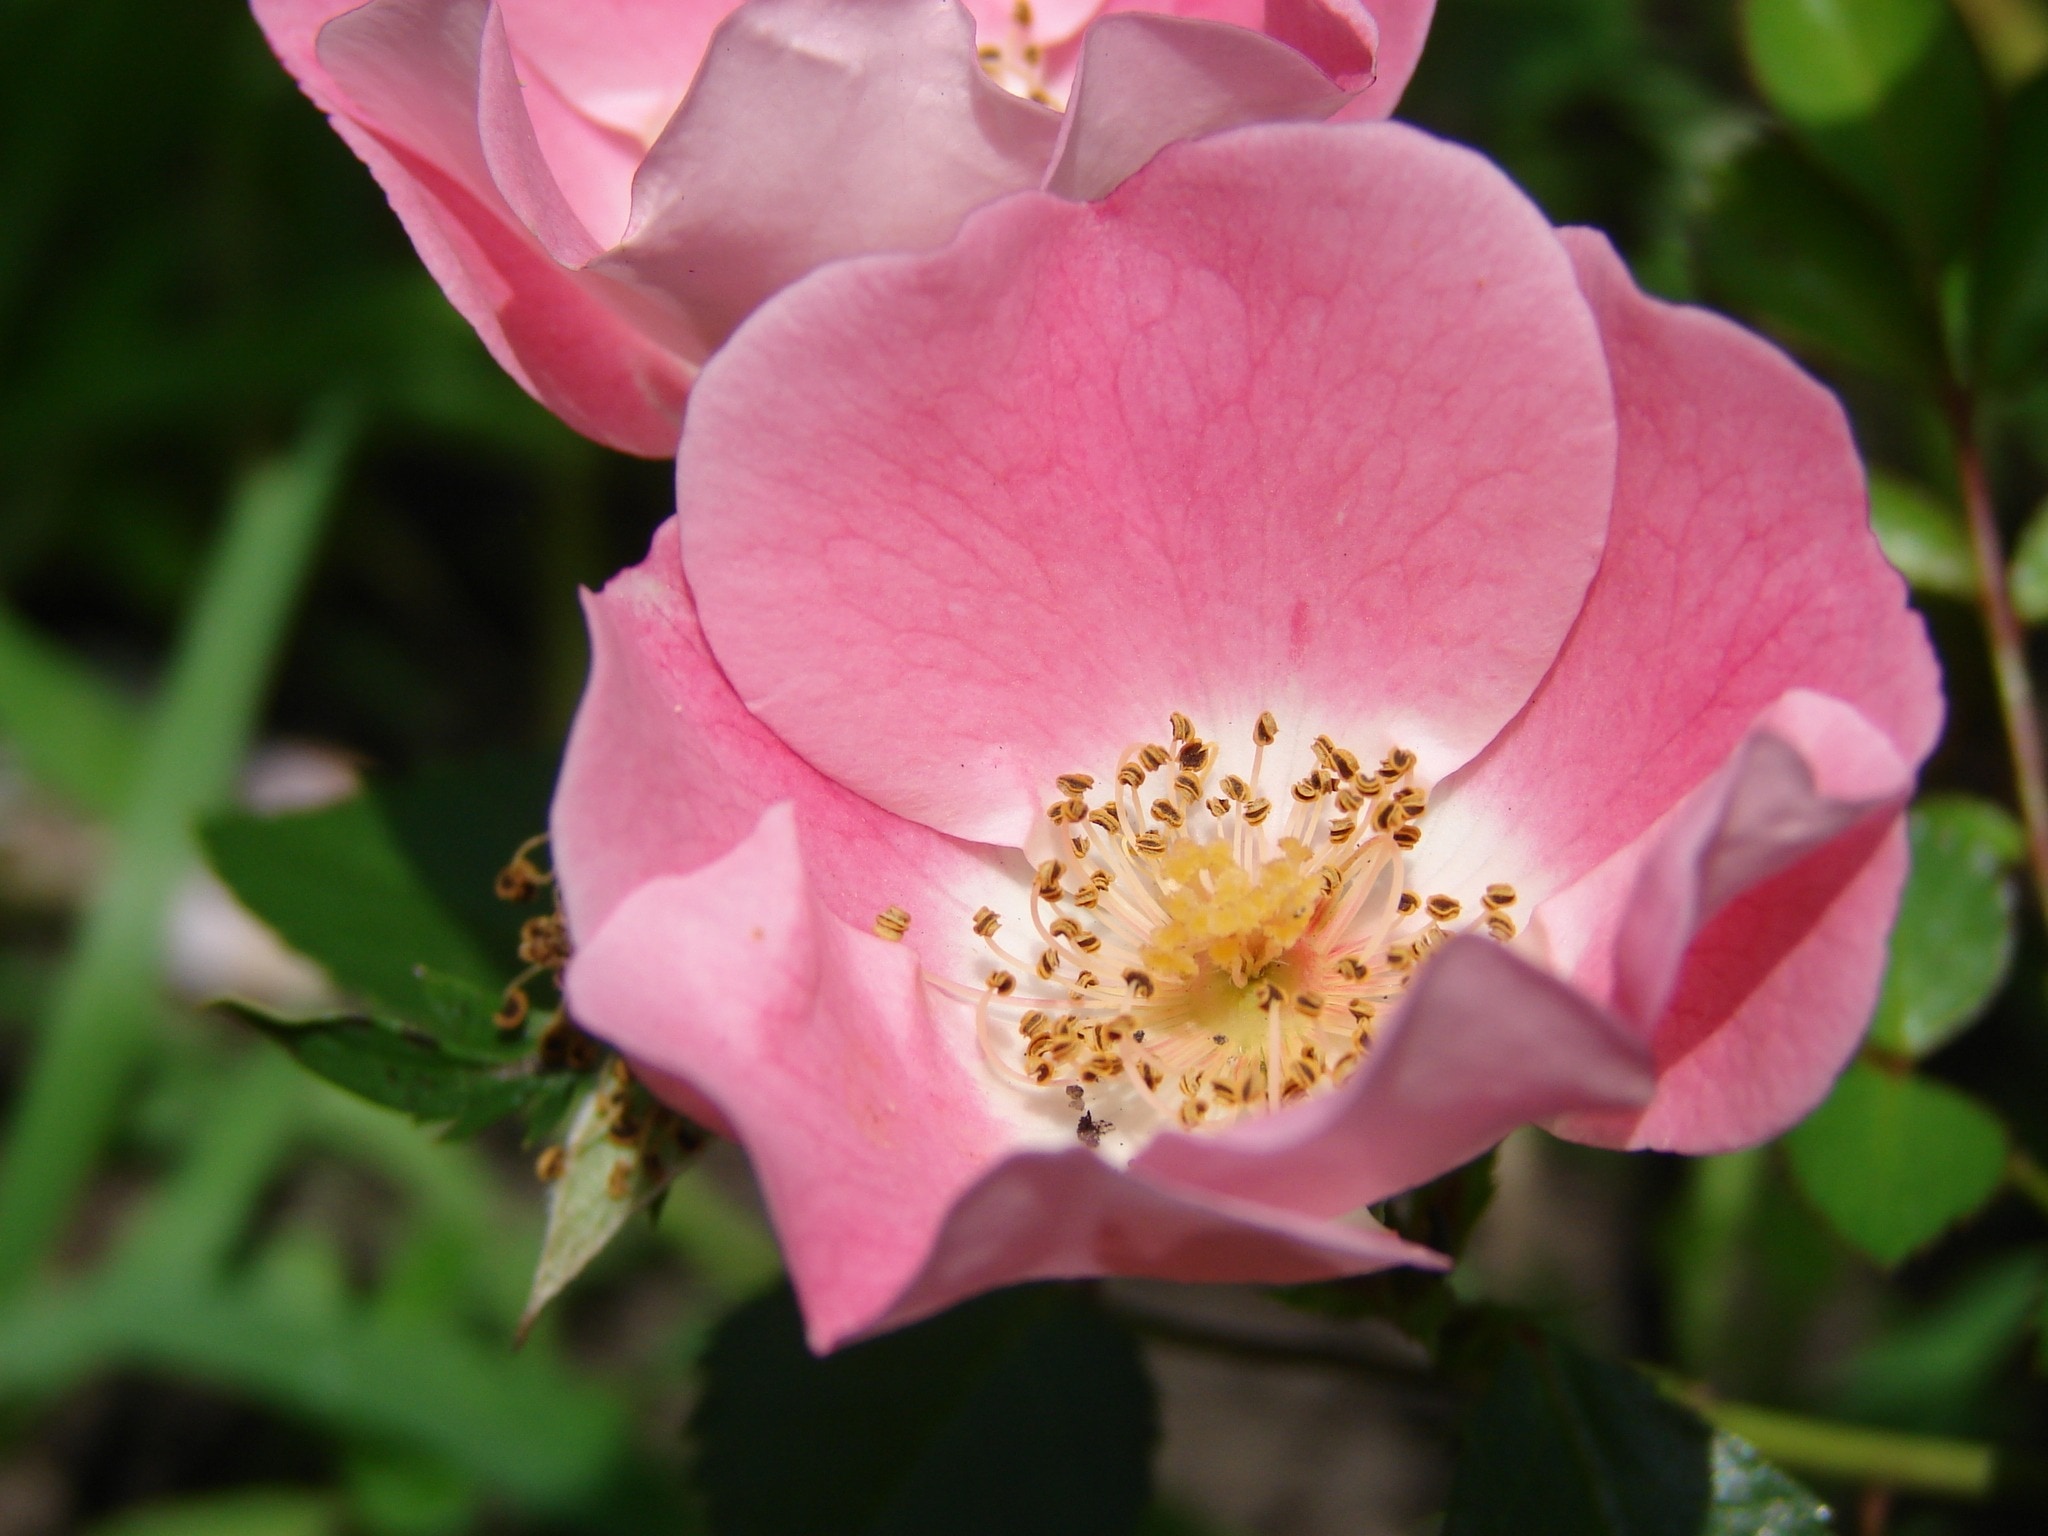 Rose, Floral, Plant, Natural, Flower, flower, pink color